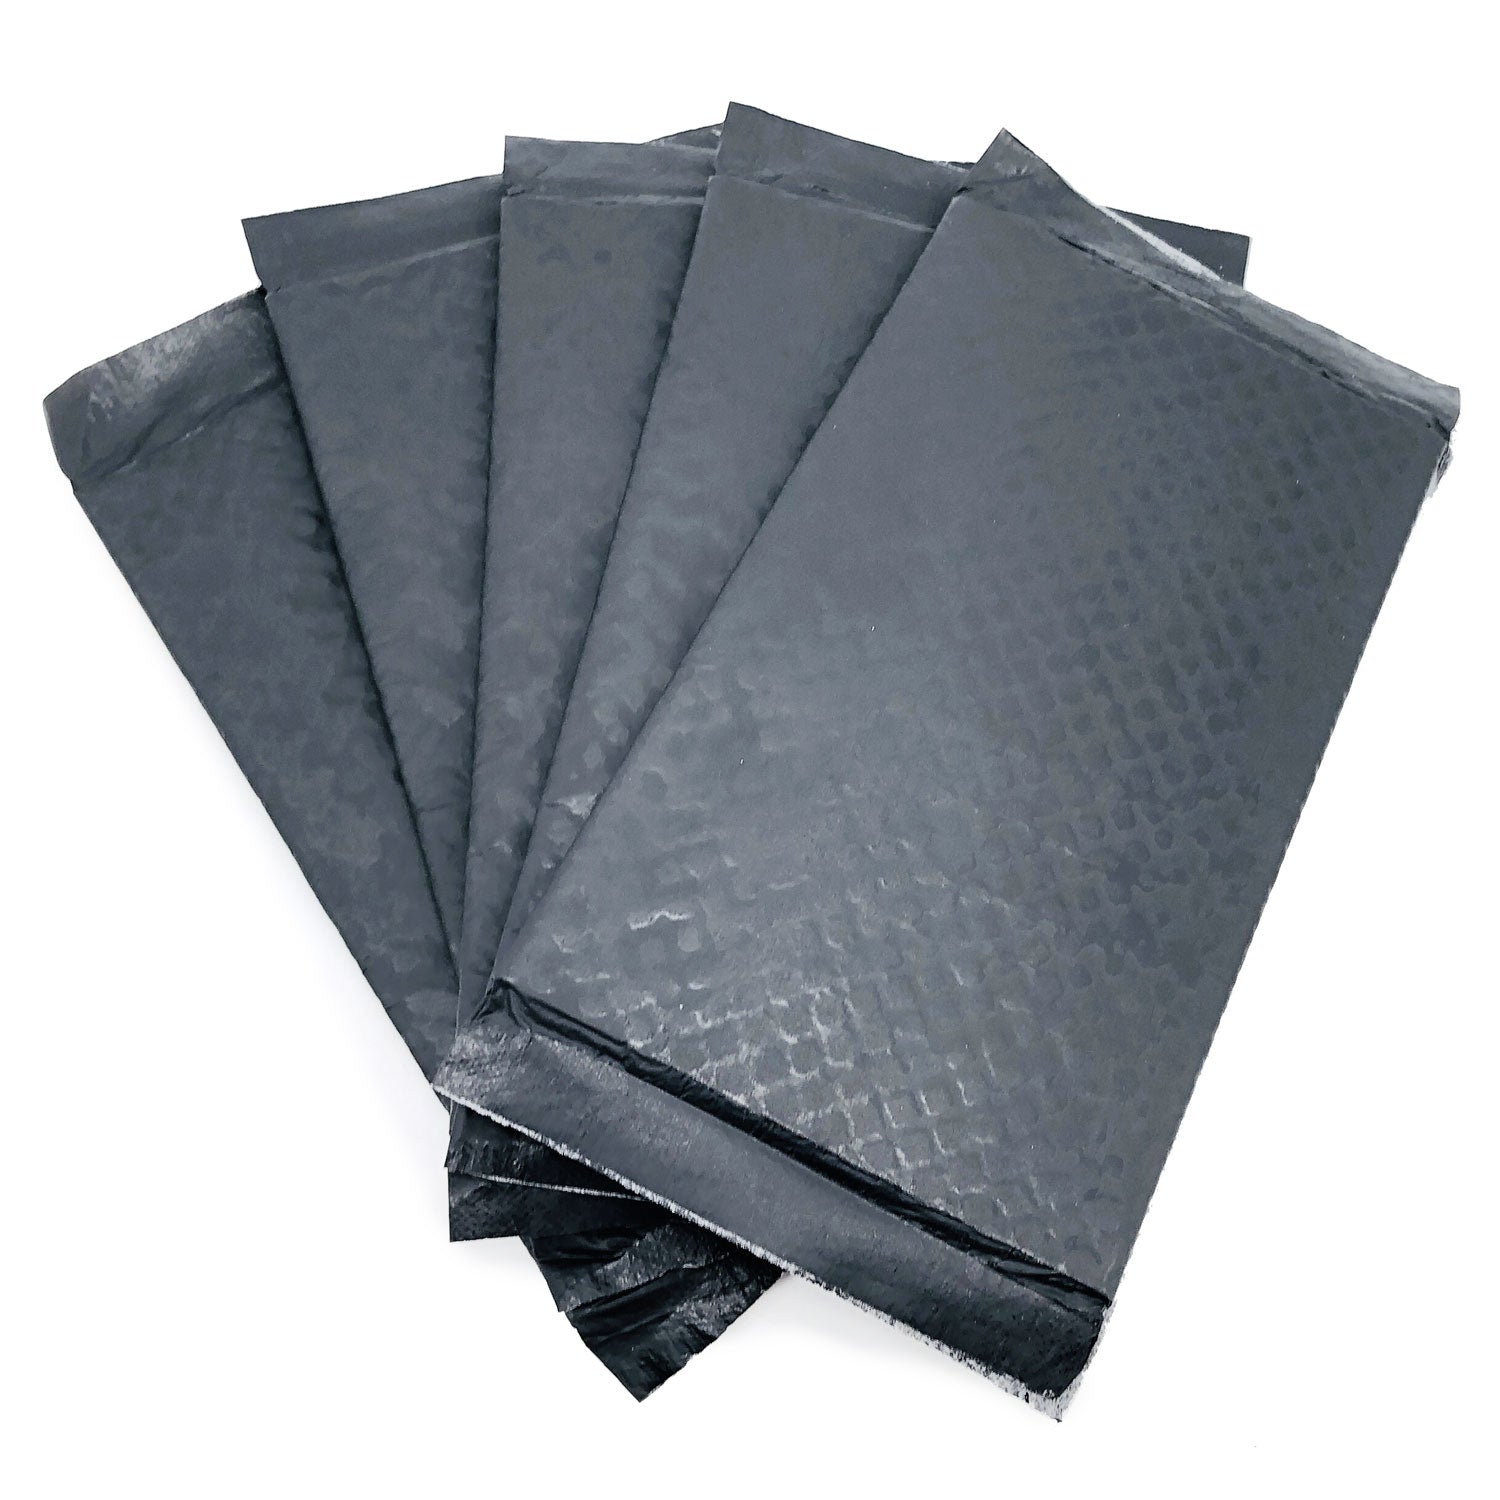 ValuePad Plus Cat Litter Pads, 16.9x11.4 Inch, Carbon, 25 Count - Breeze Compatible Refills